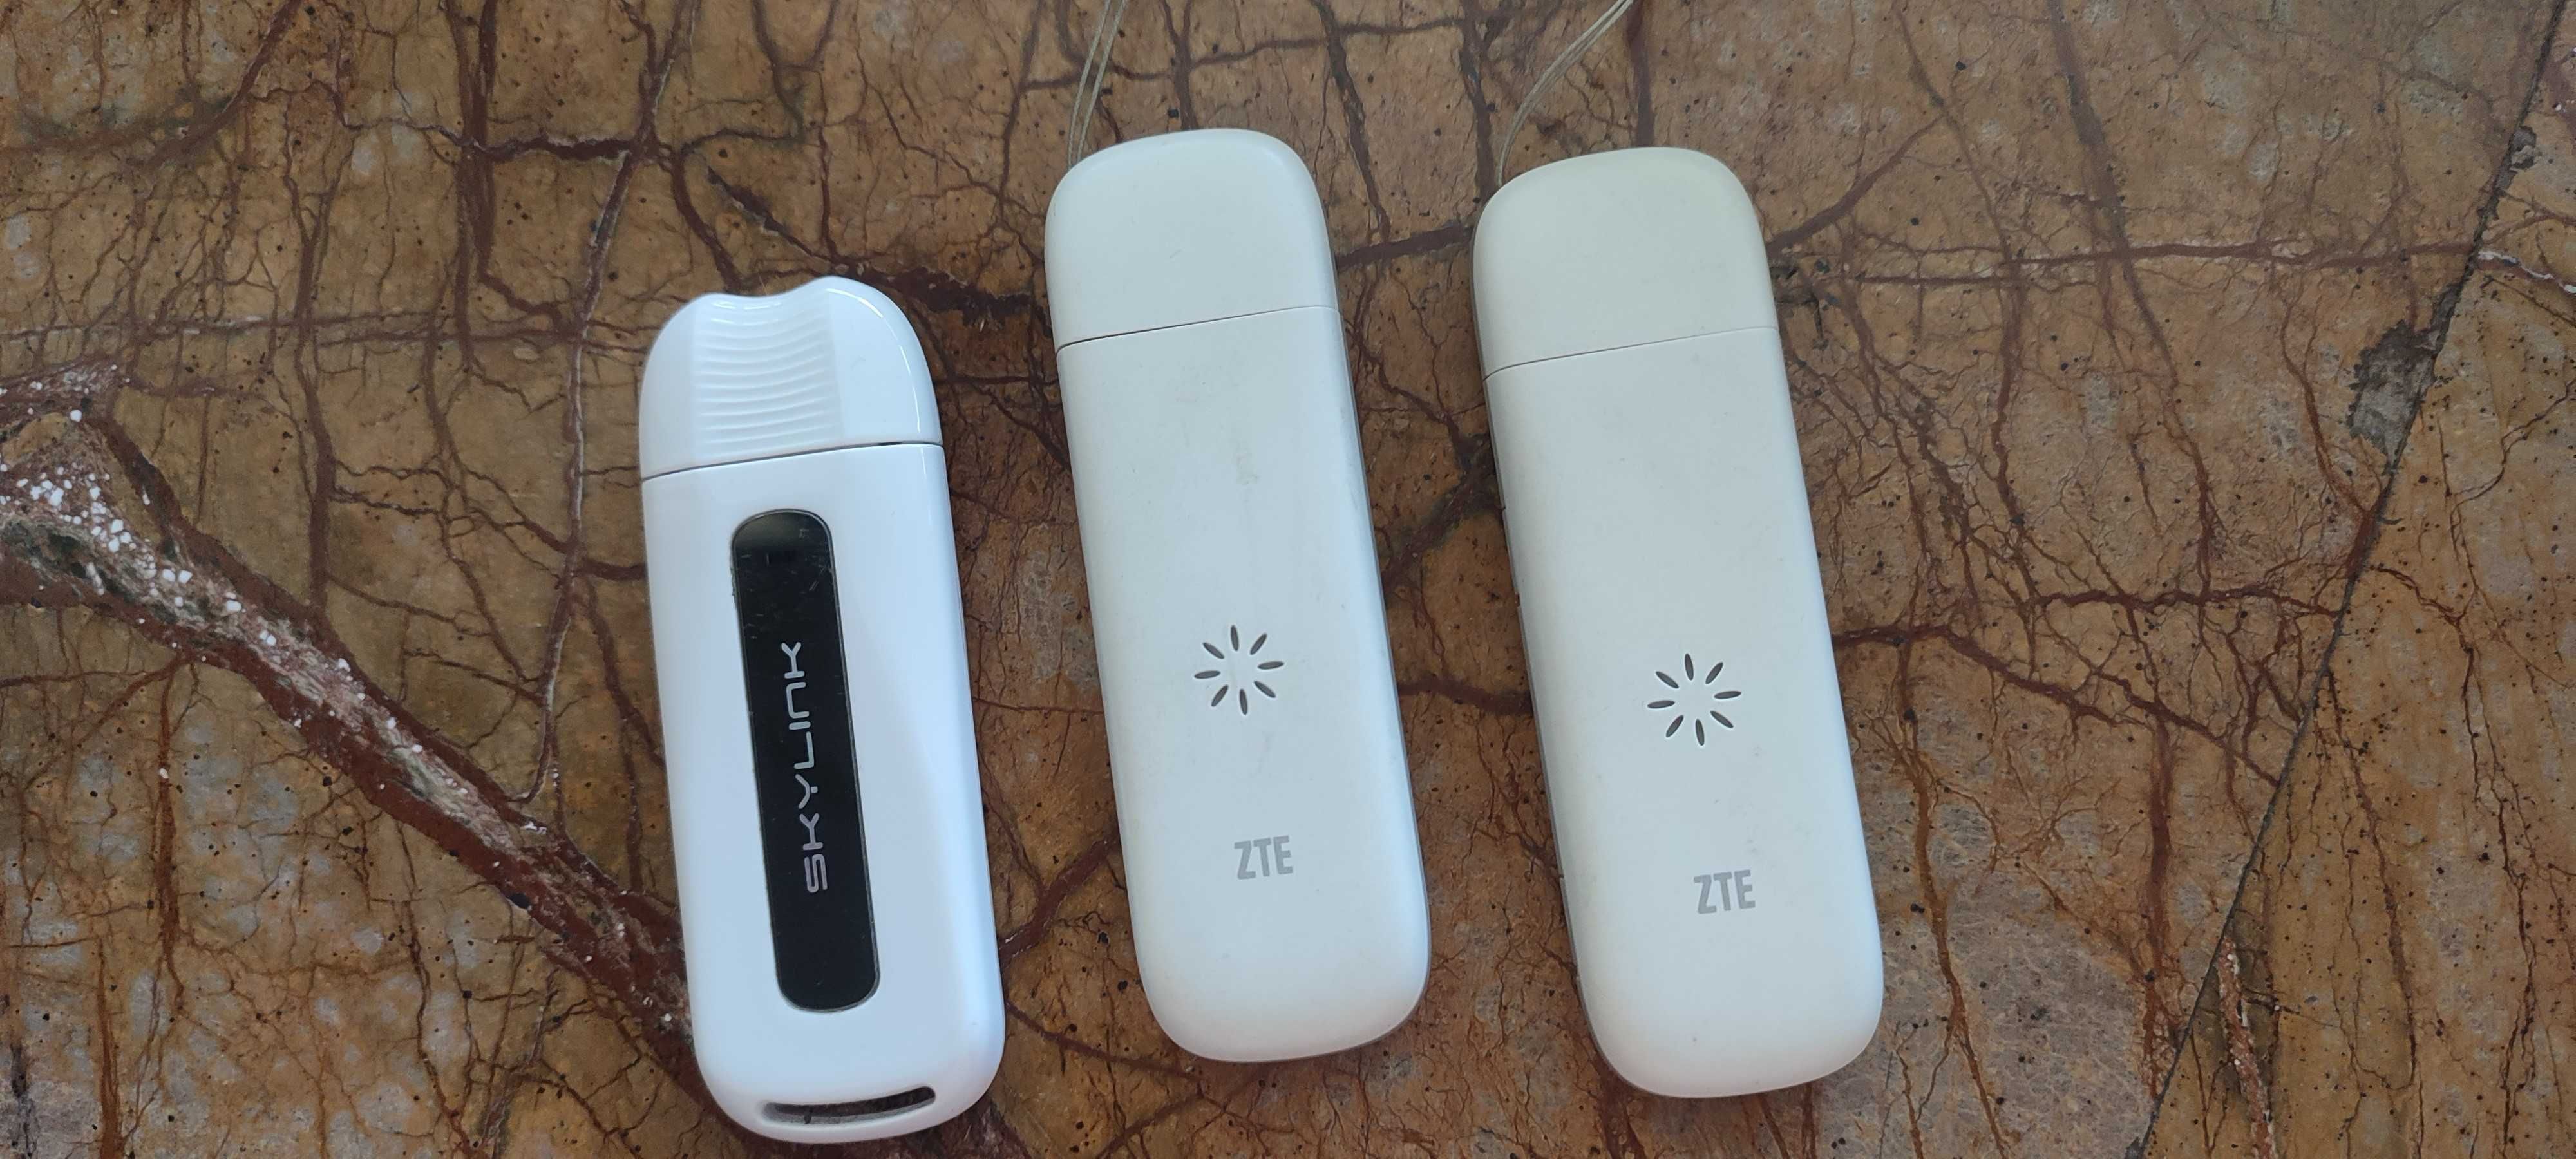 Модем флешка WiFi роутер ZTE 4G